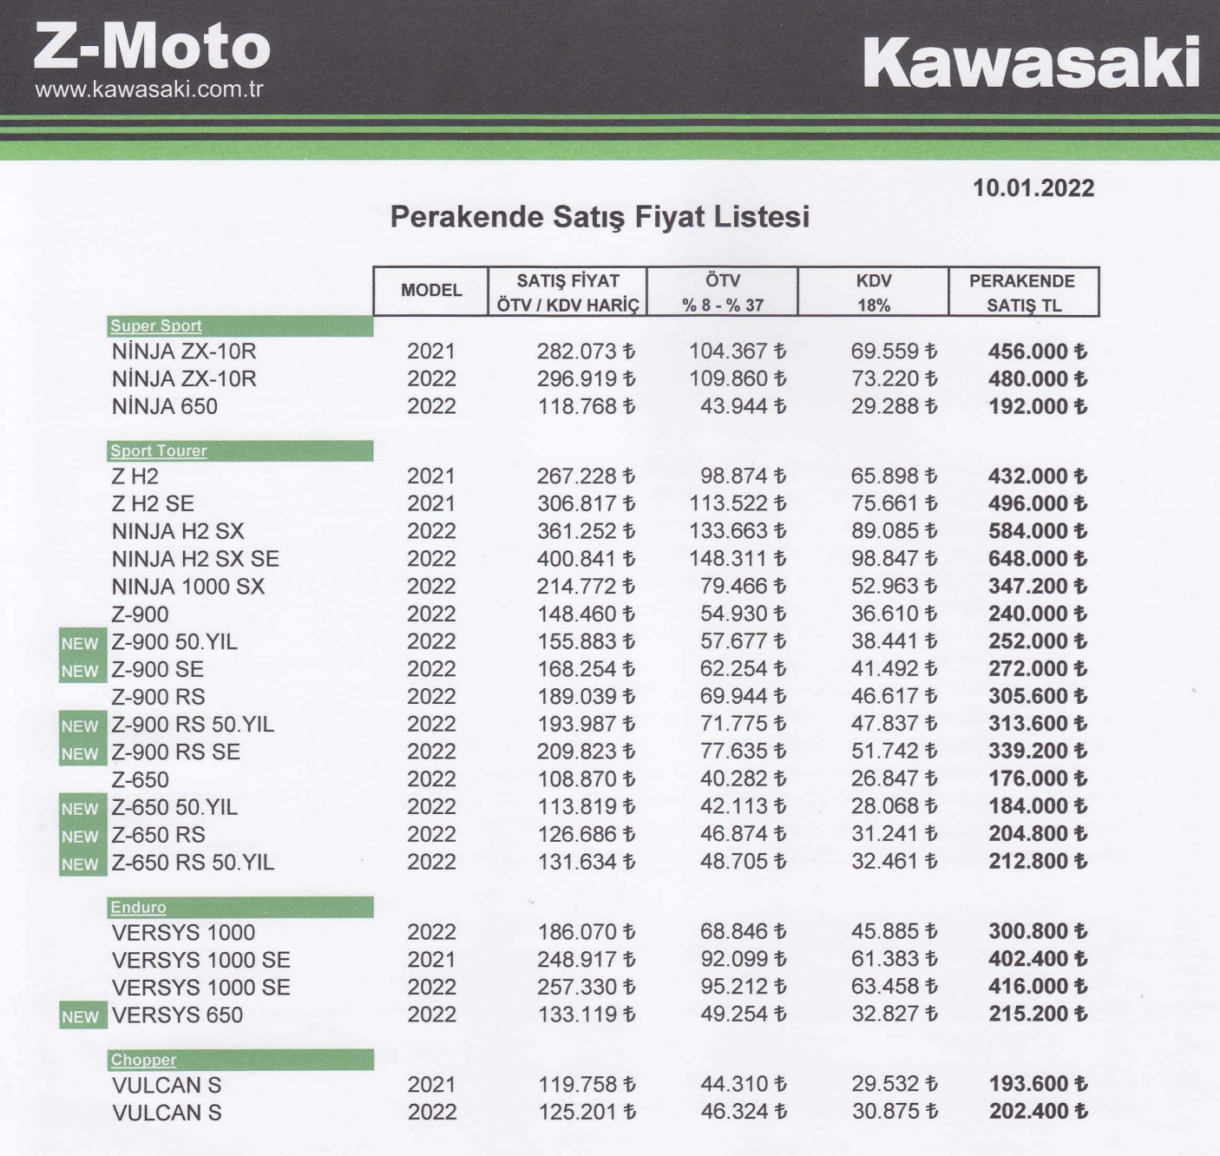 Kawasaki Fiyat Listesi, 2022